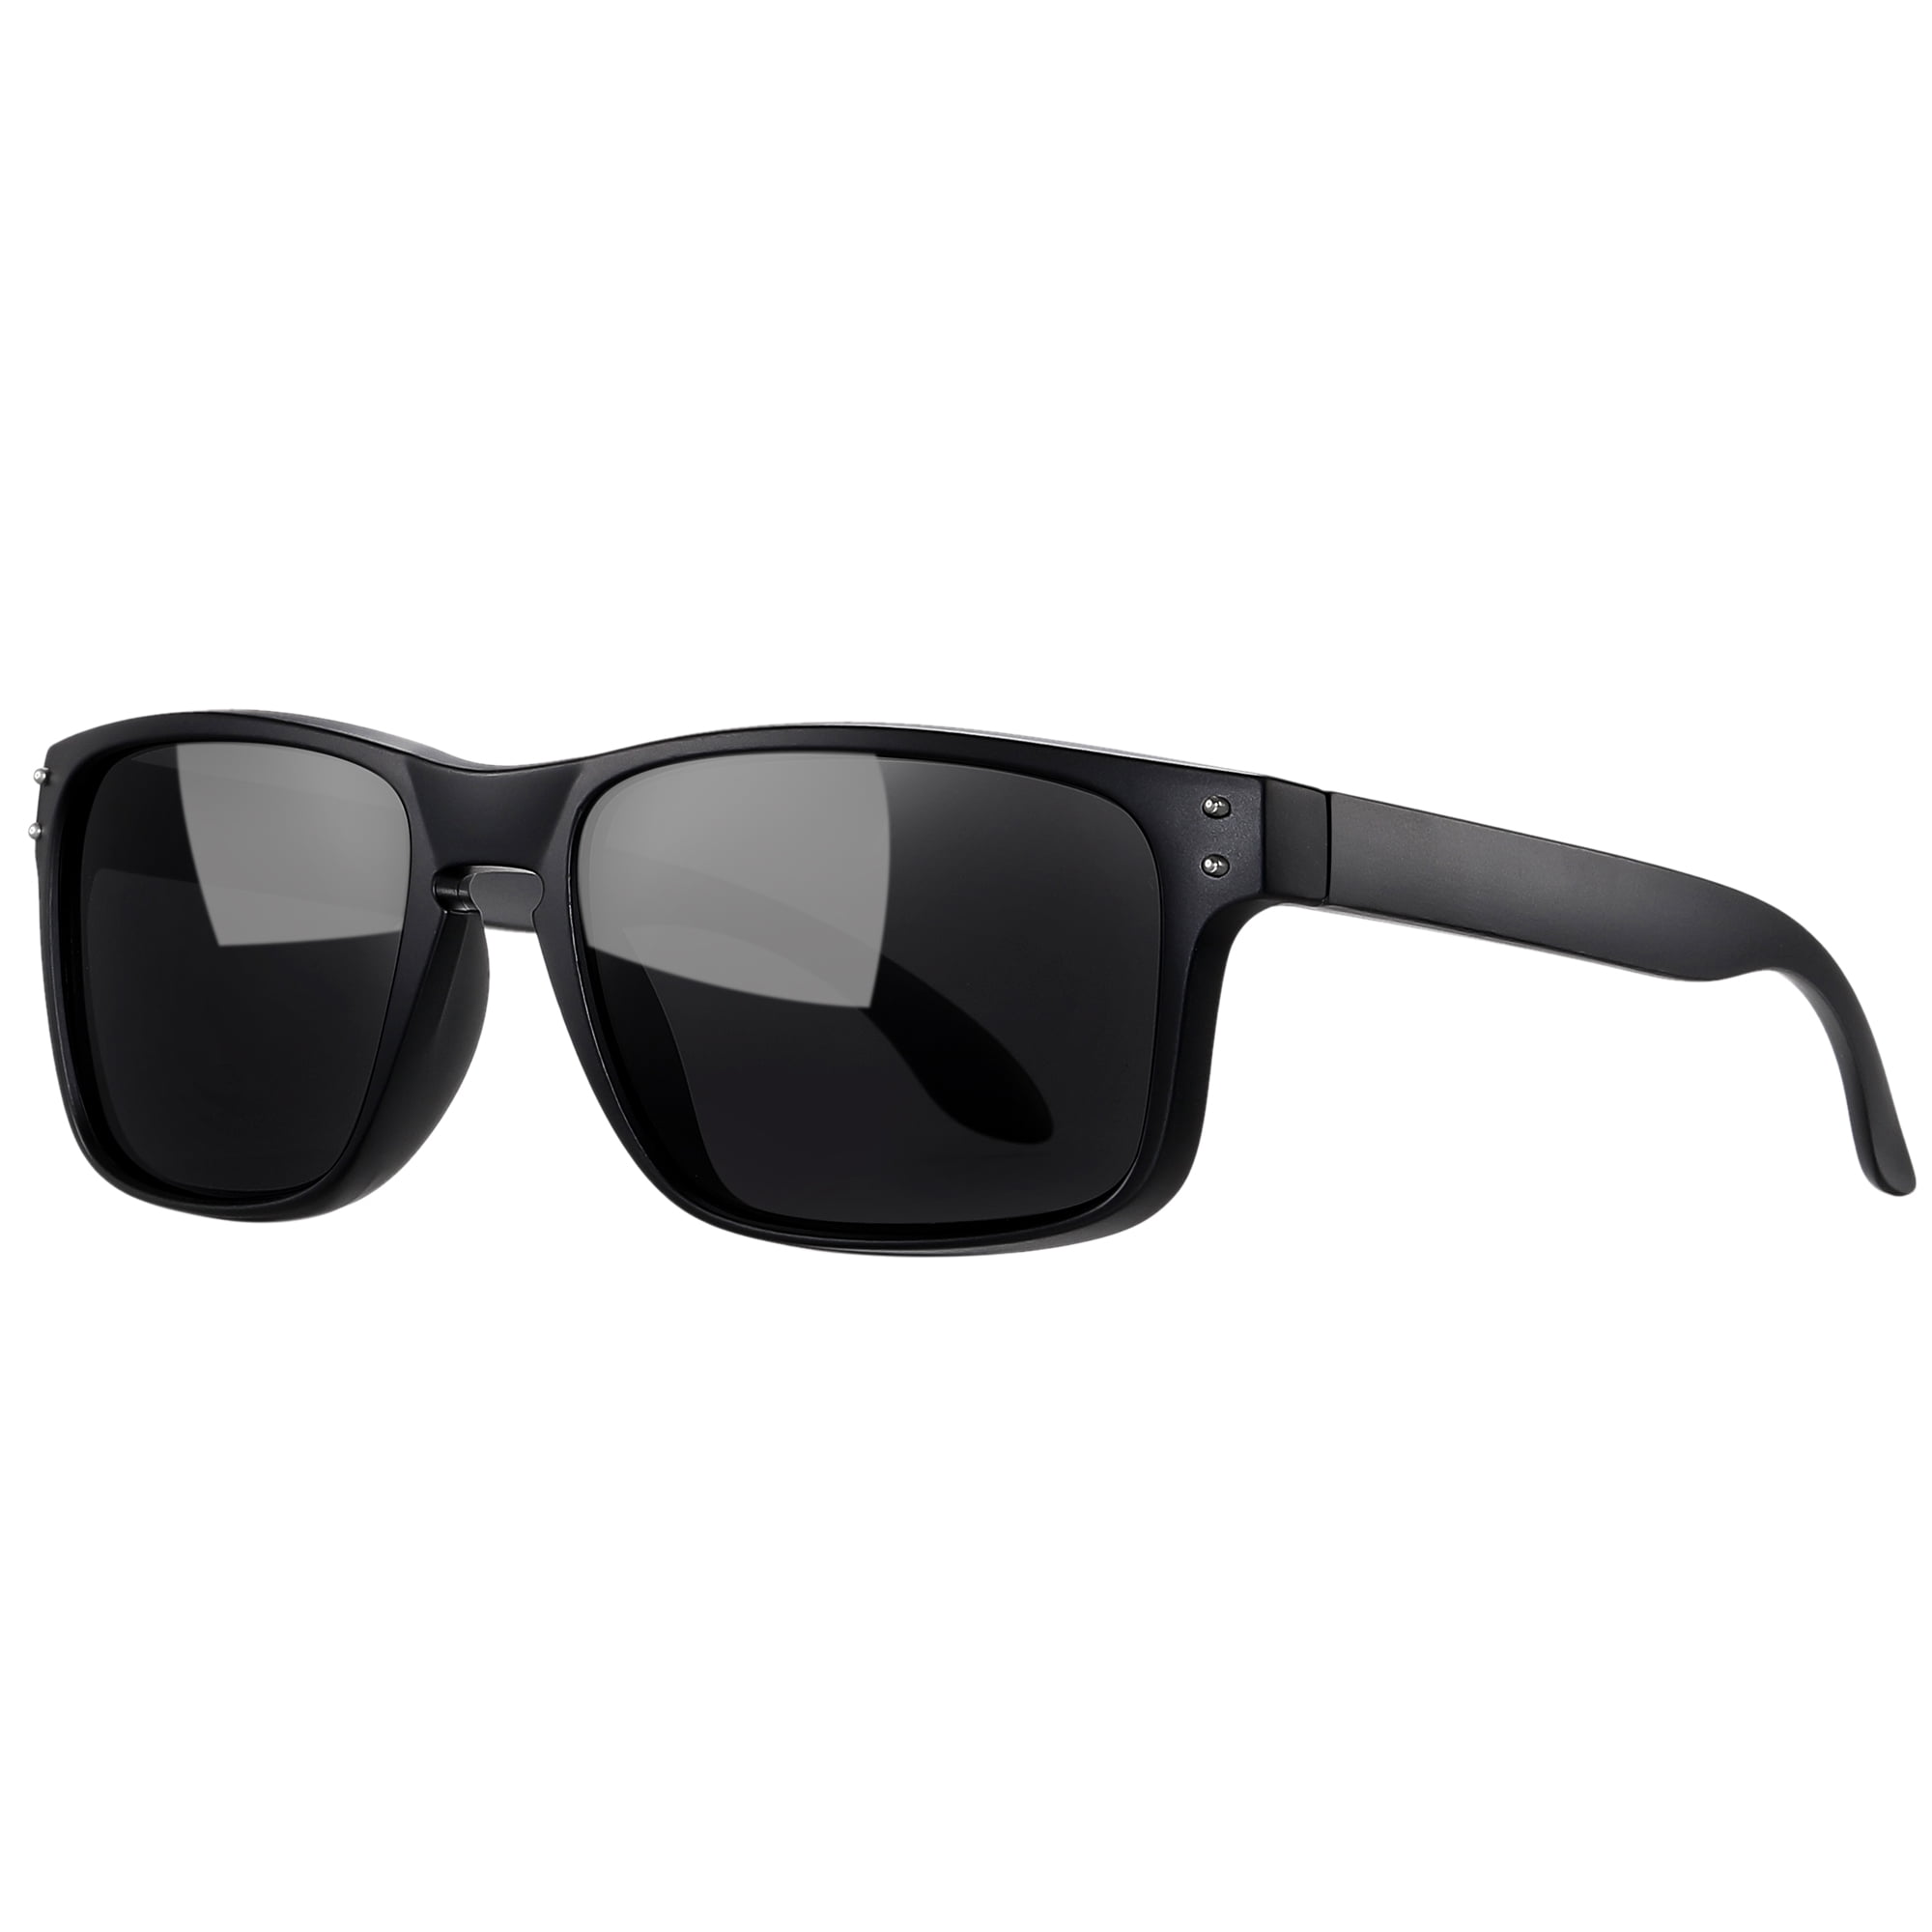 Joopin Sports Polarized Sunglasses for Men Women Flexible Frame